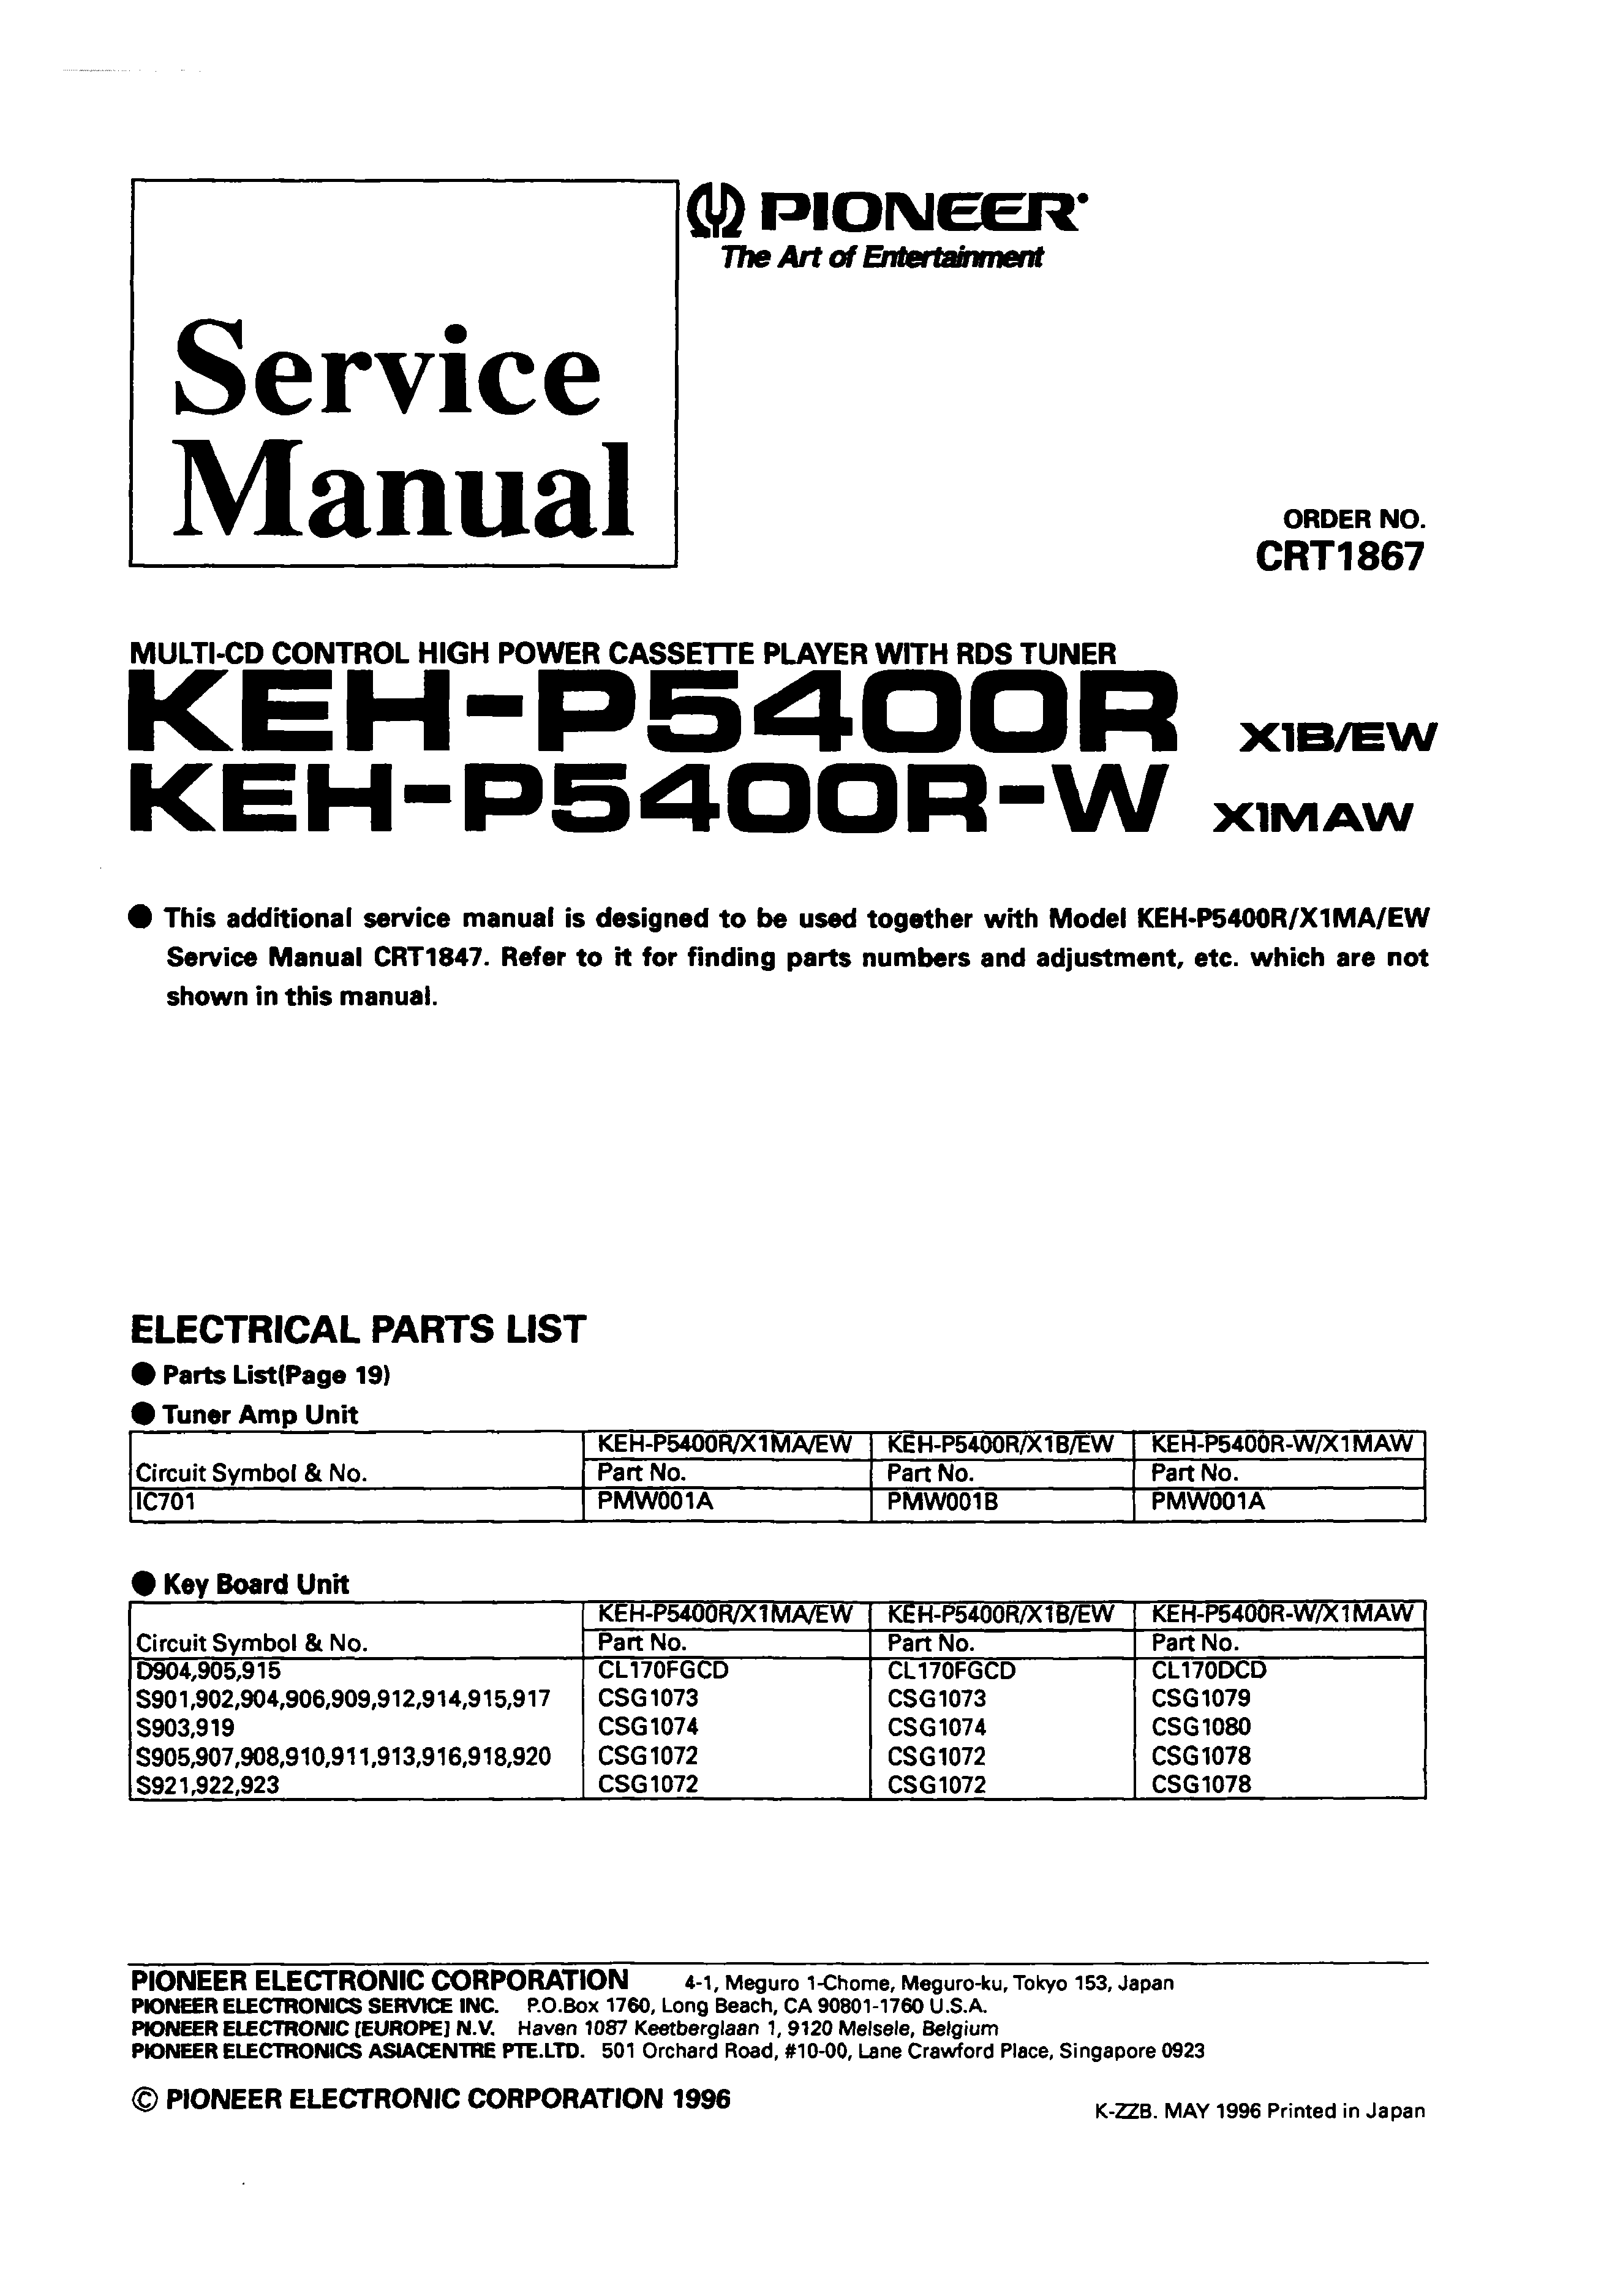 Pioneer Model 1074 Manual